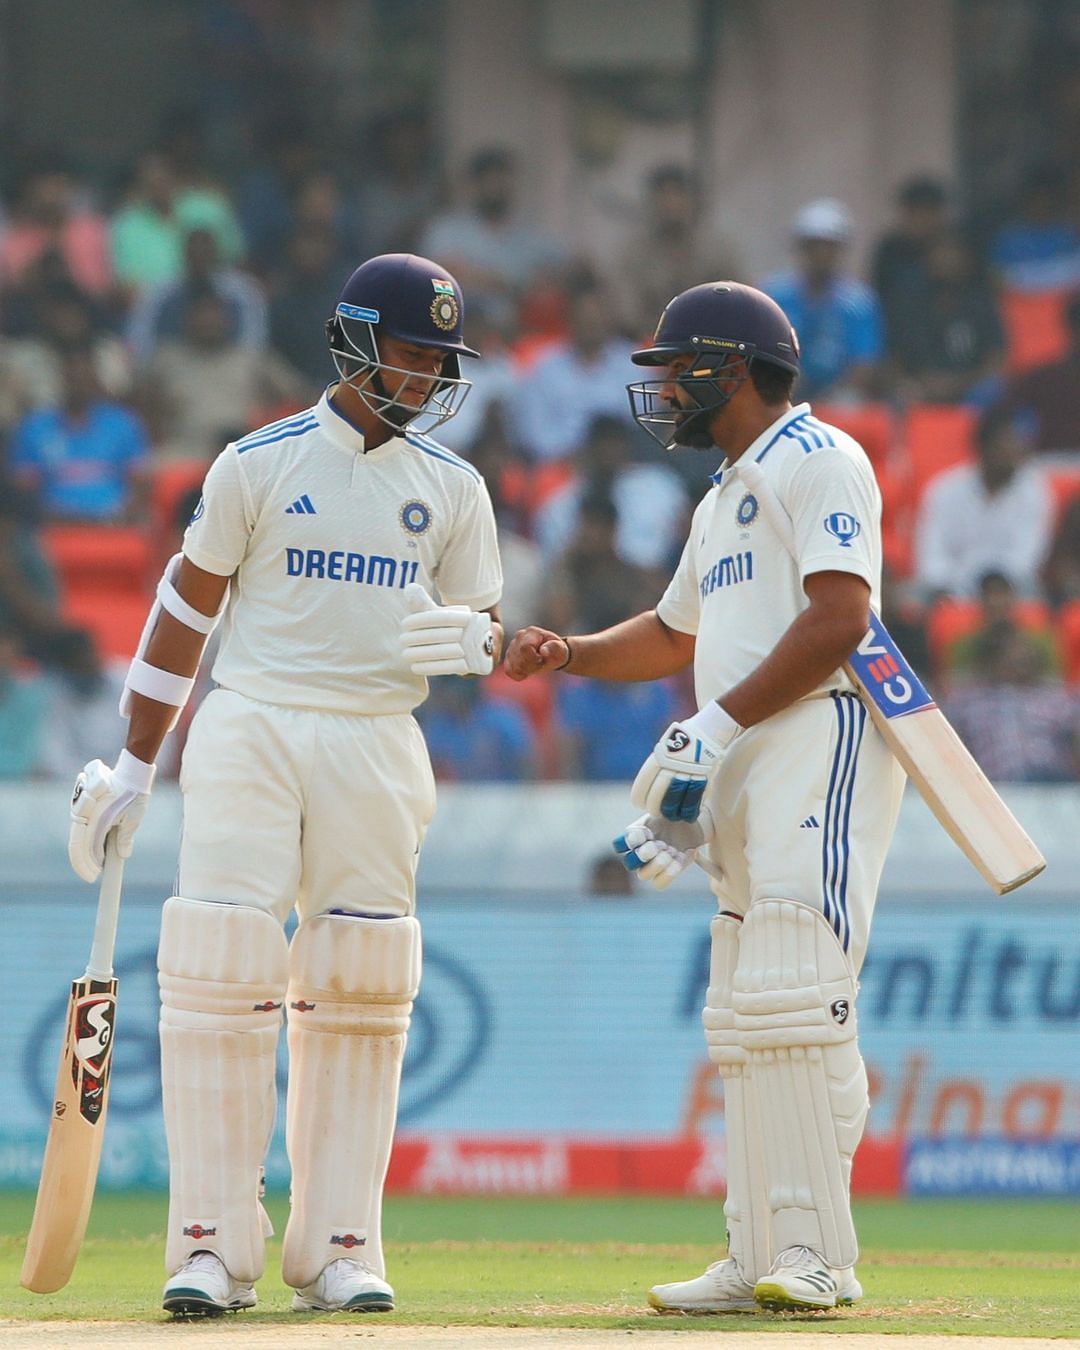 IND vs ENG: हैदराबाद टेस्ट के पहले दिन स्टंप्स तक भारत ने एक विकेट खोकर 119 रन बना लिए हैं. 